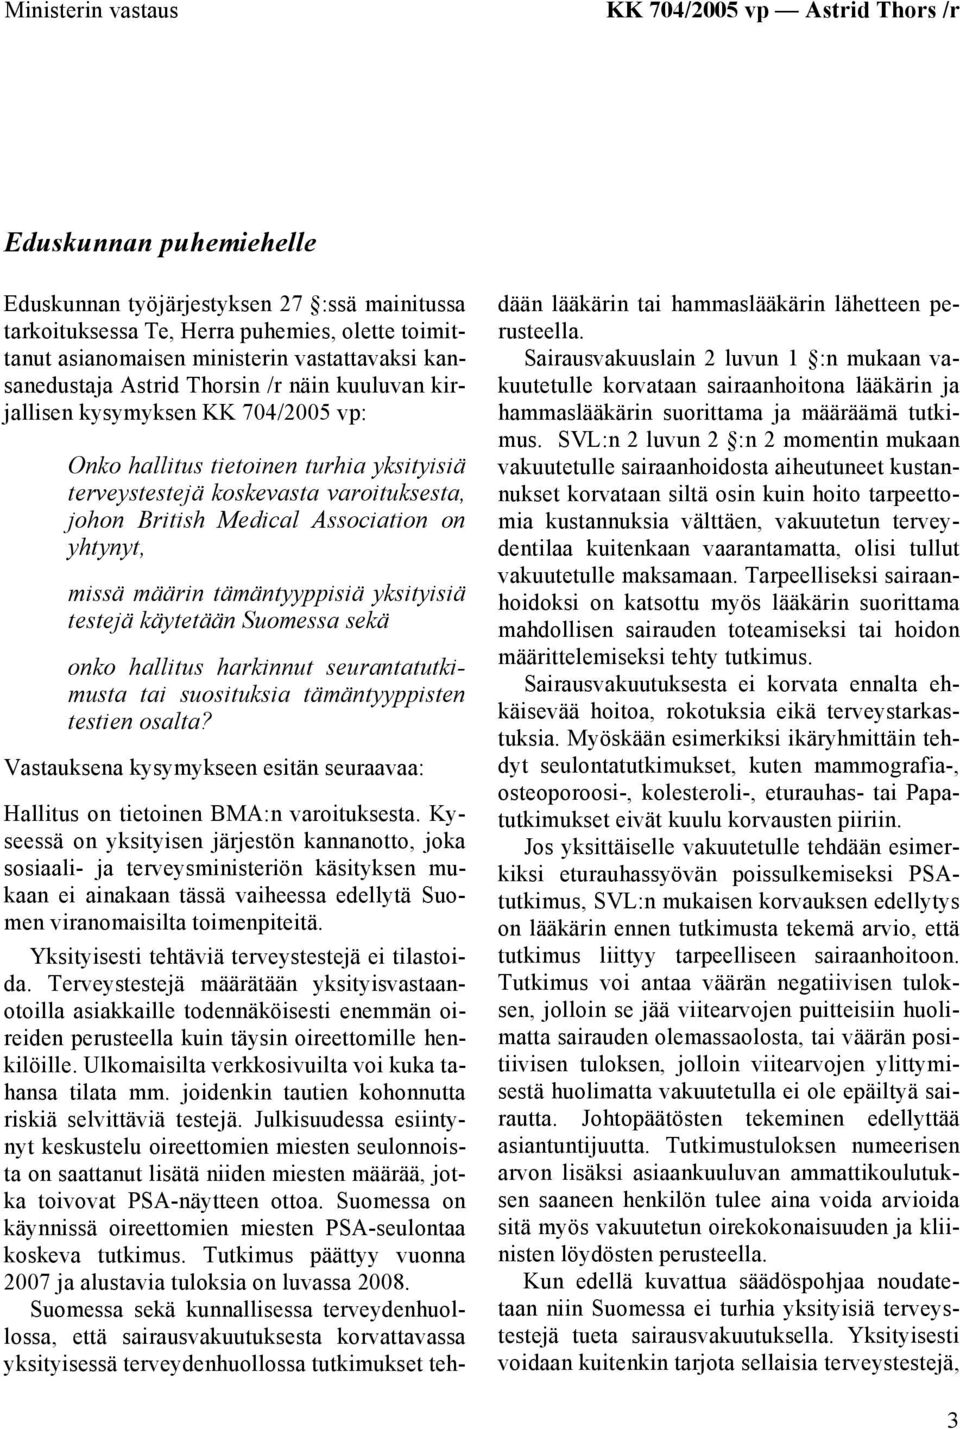 Medical Association on yhtynyt, missä määrin tämäntyyppisiä yksityisiä testejä käytetään Suomessa sekä onko hallitus harkinnut seurantatutkimusta tai suosituksia tämäntyyppisten testien osalta?